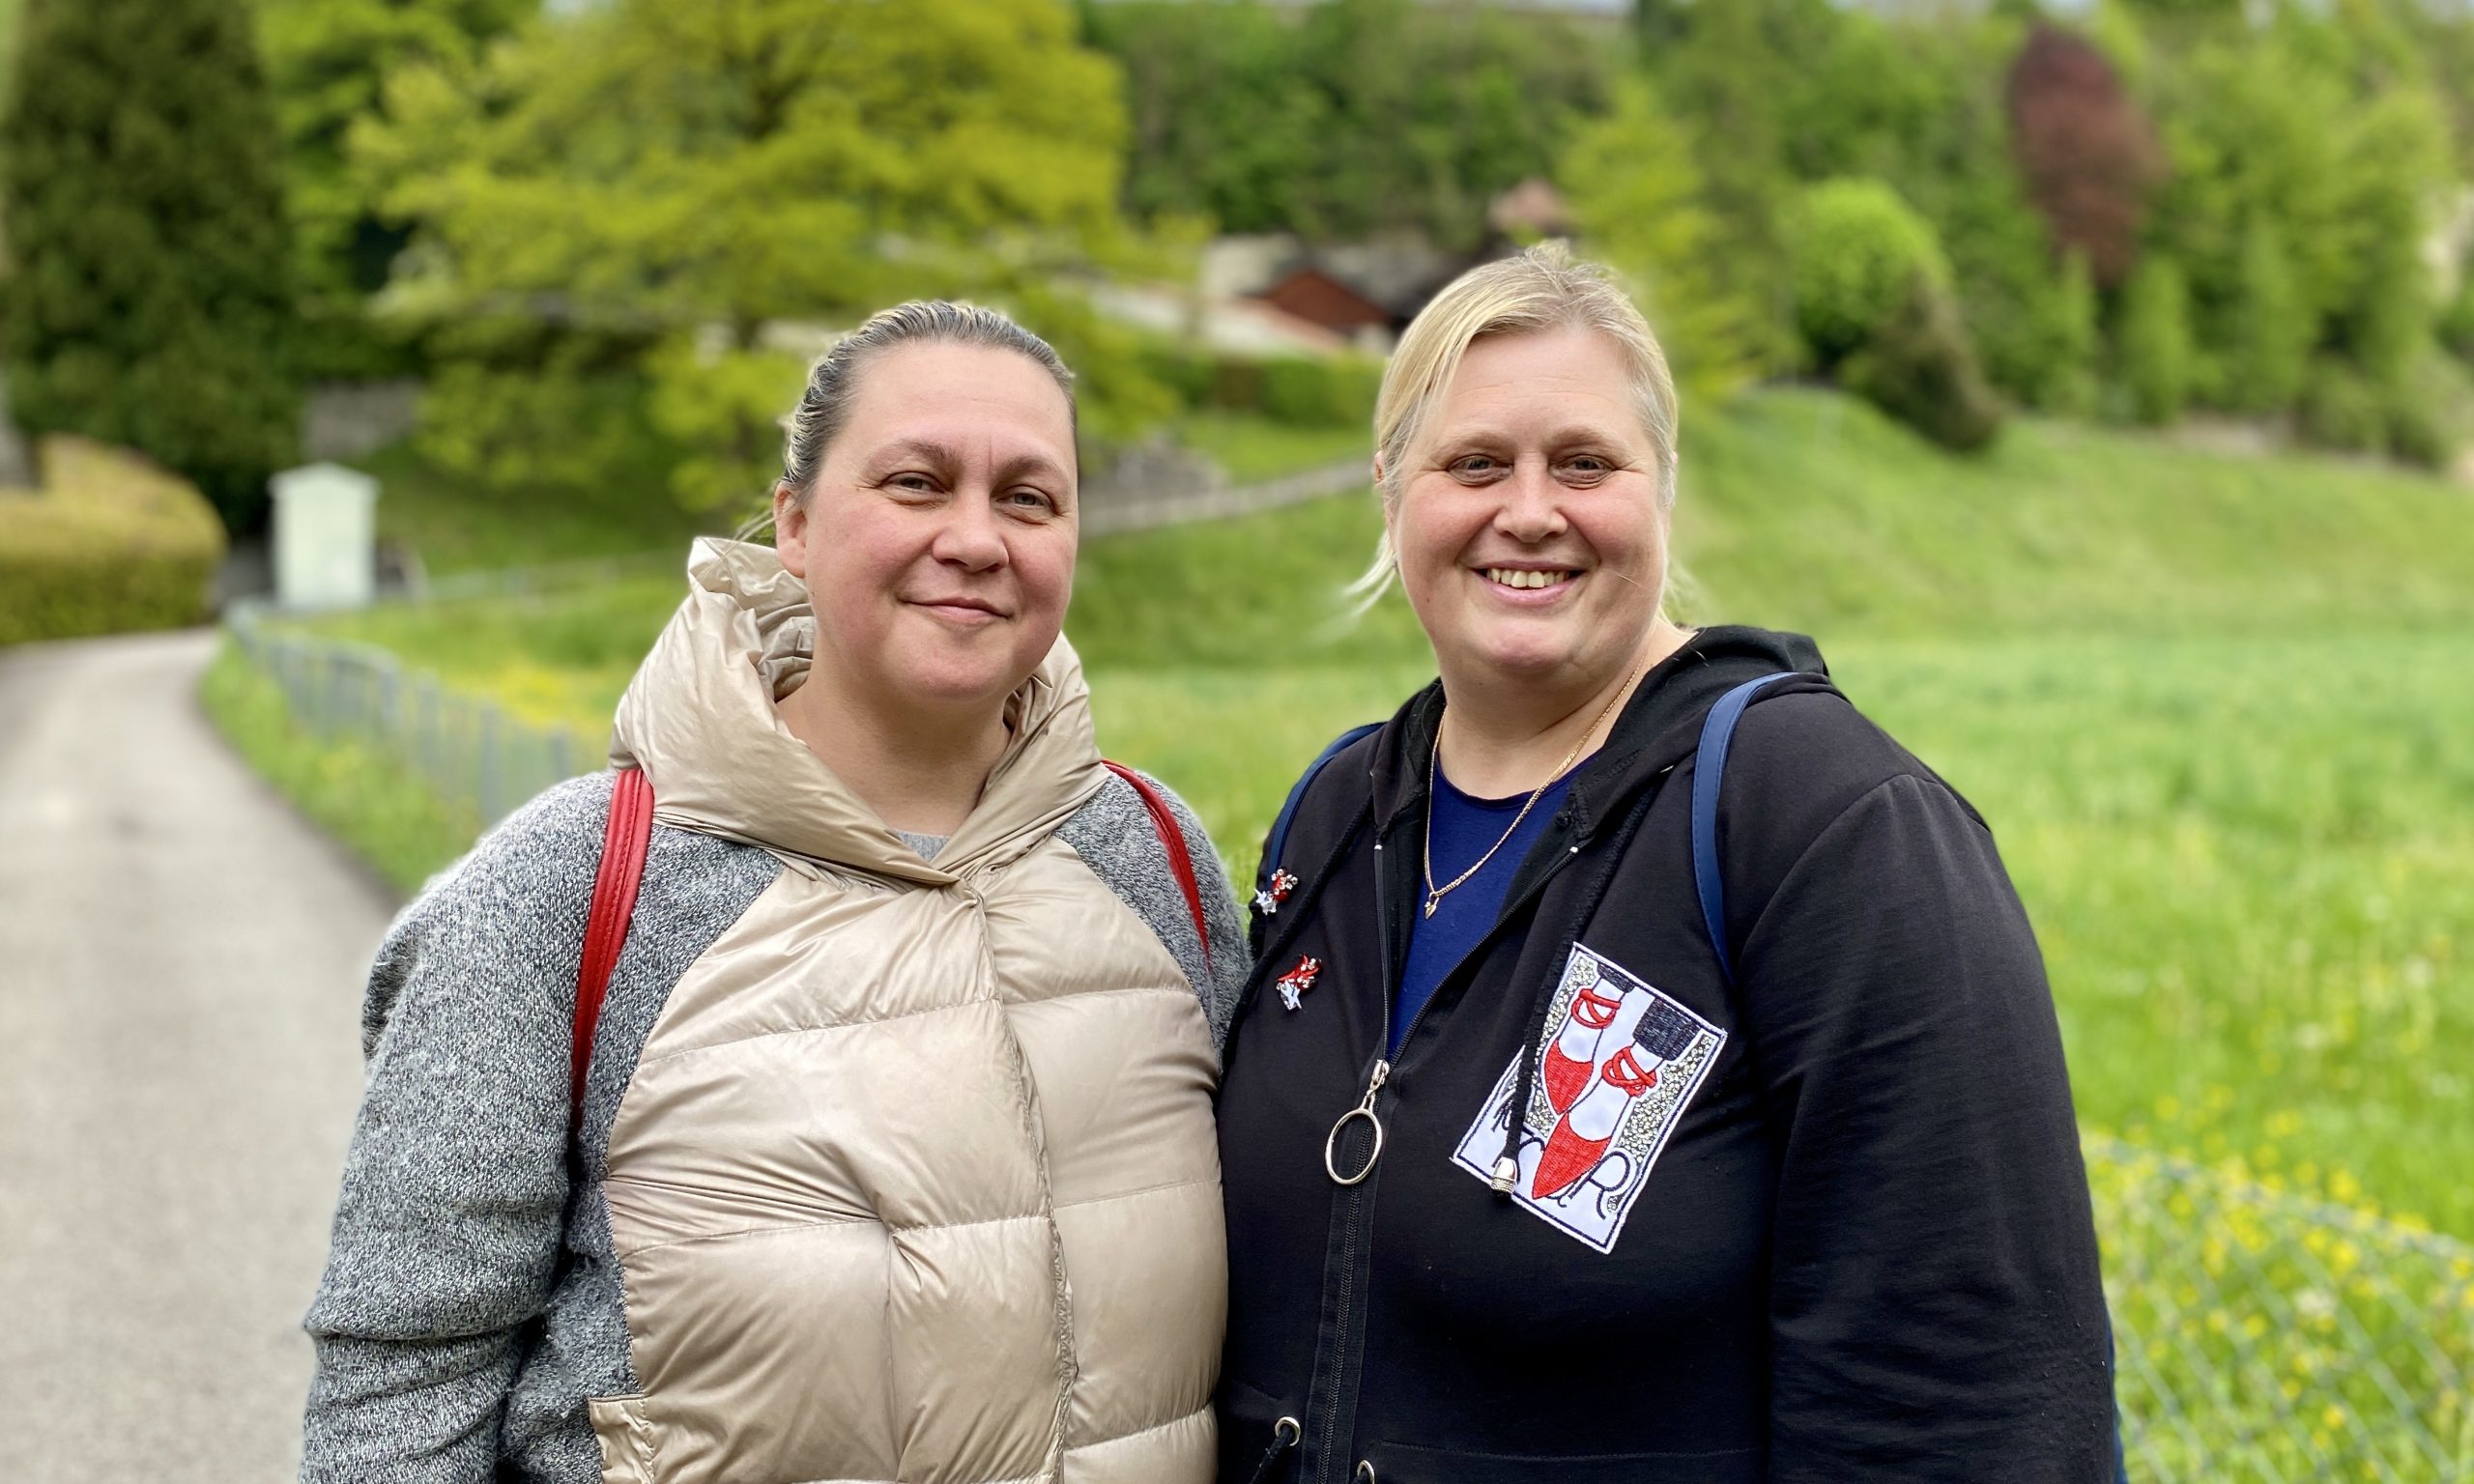 Подруги Лена Кмита из Черновцов и Яна Смоляр из Чернигова. Как психологи они помогали украинским женщинам-волонтерам, которые восстанавливали силы в женском монастыре во Фрибурге. 6 мая 2022 г. (© schwingen.net)